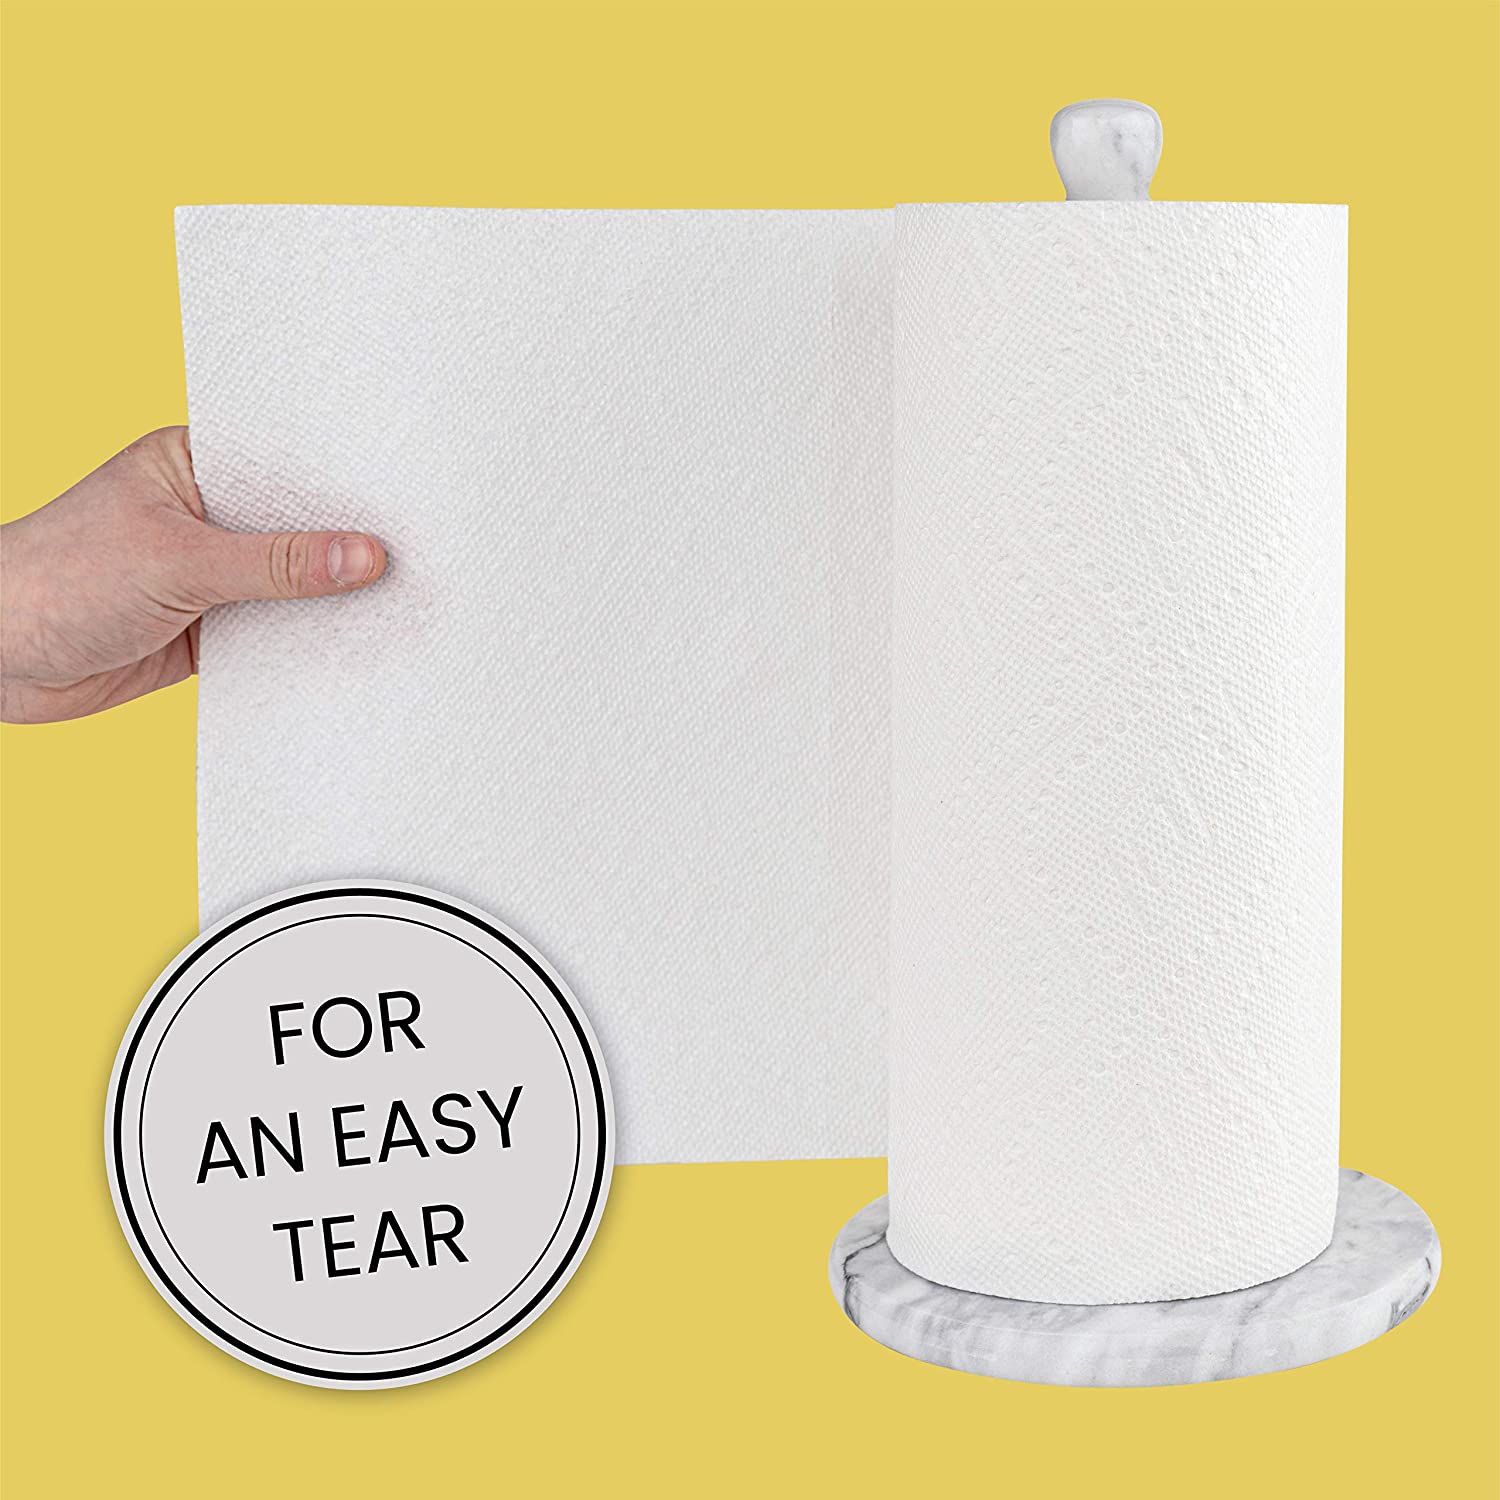 White Marble Paper Towel Holder - Hudson Grace